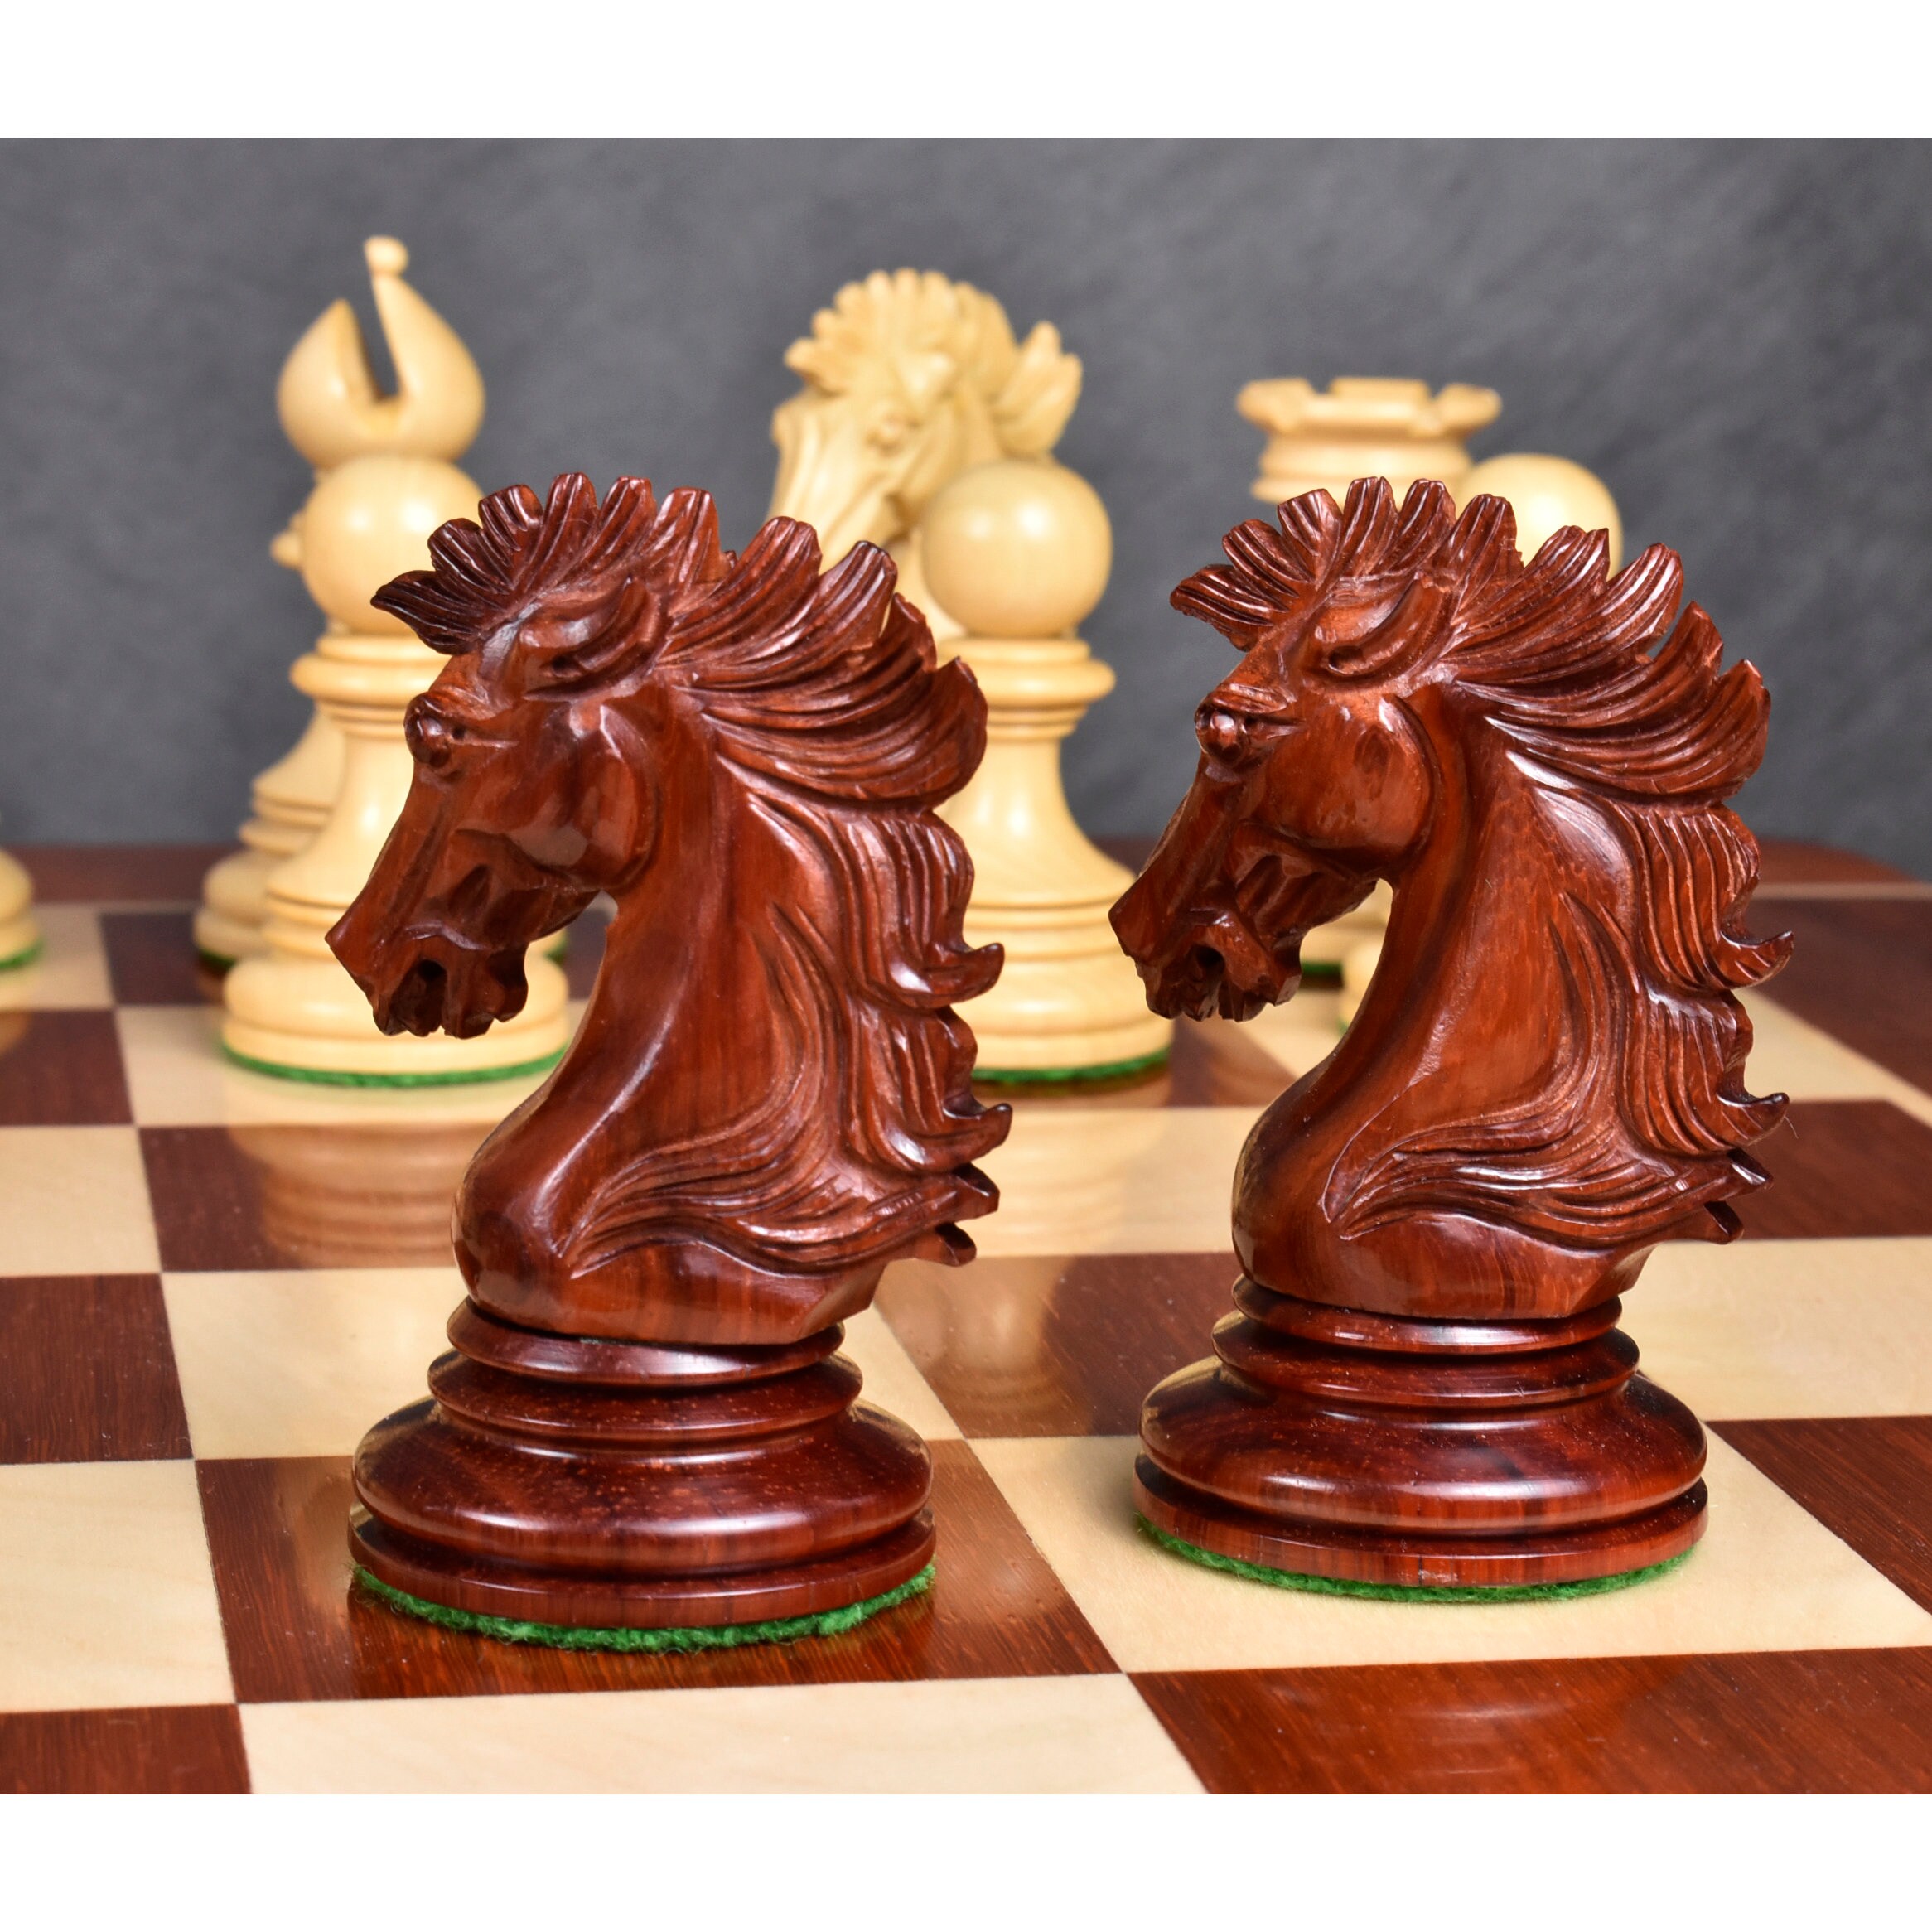 The Modena Series Luxury Chess Set - 4.4 King